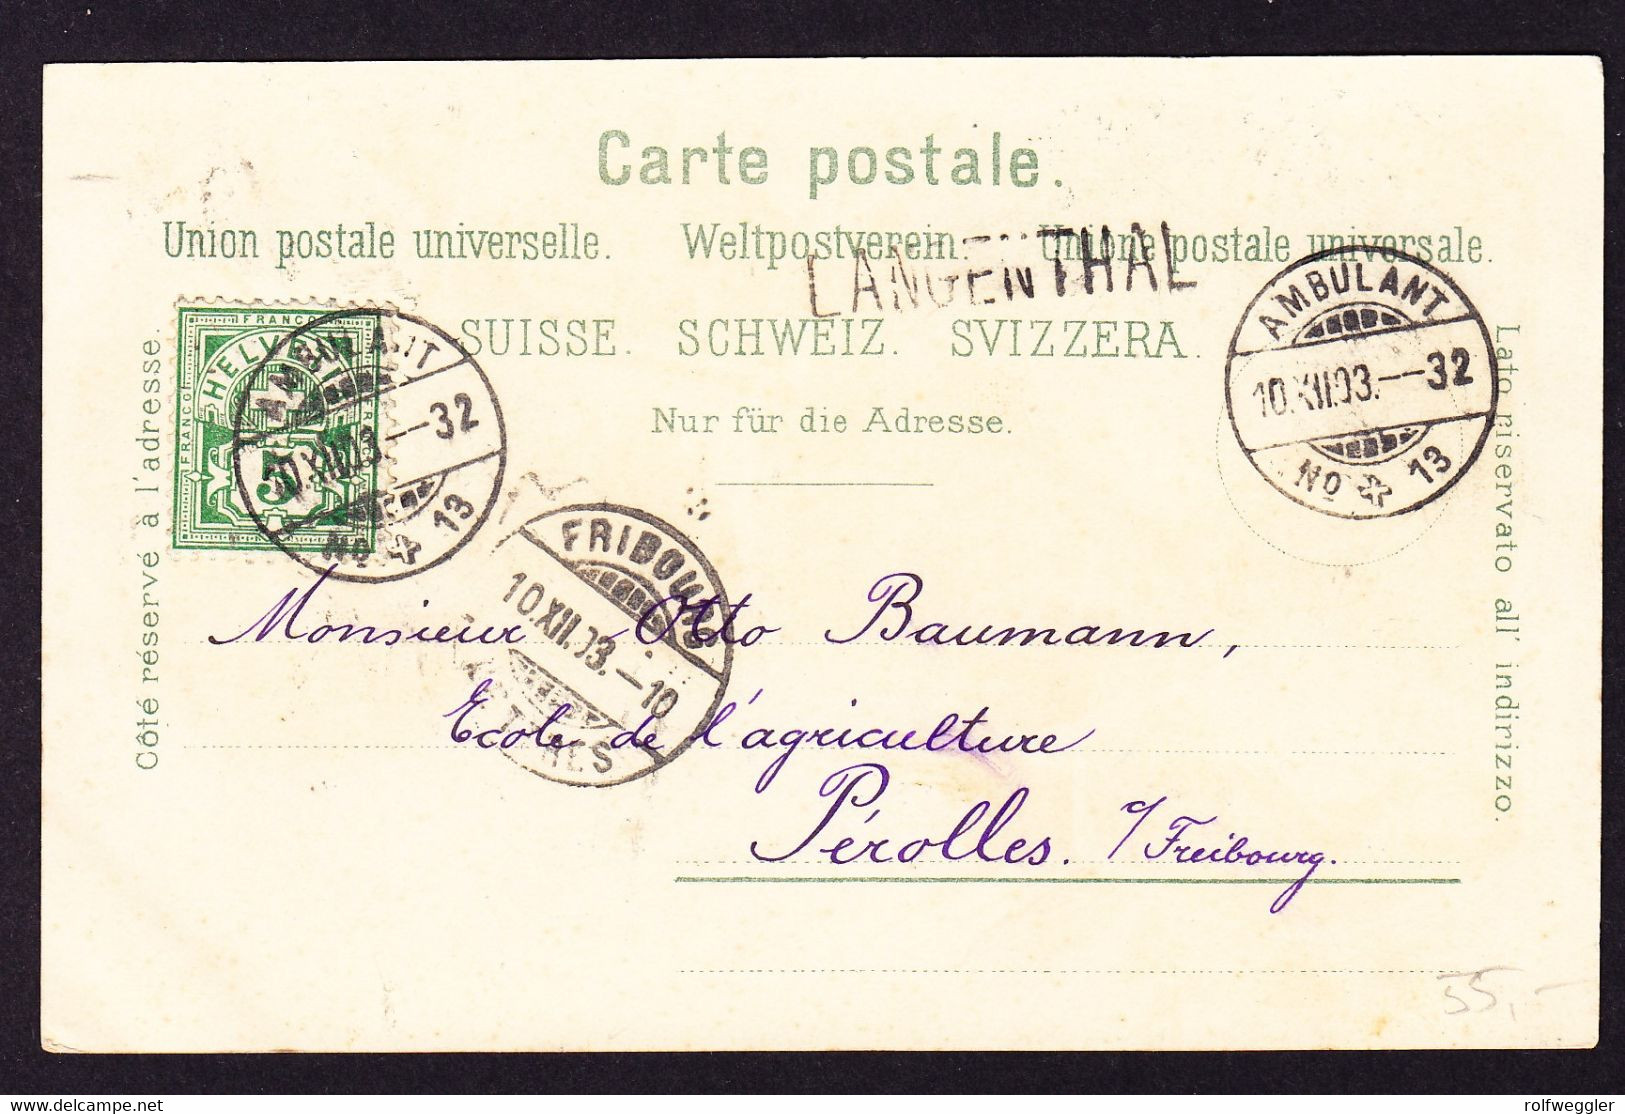 1903 Gelaufene Litho AK, Gruss Aus Langenthal. 6 Bildrig. Mit Postgebäude. Bahnstempel Ambulant 13, Langenthal. - Langenthal